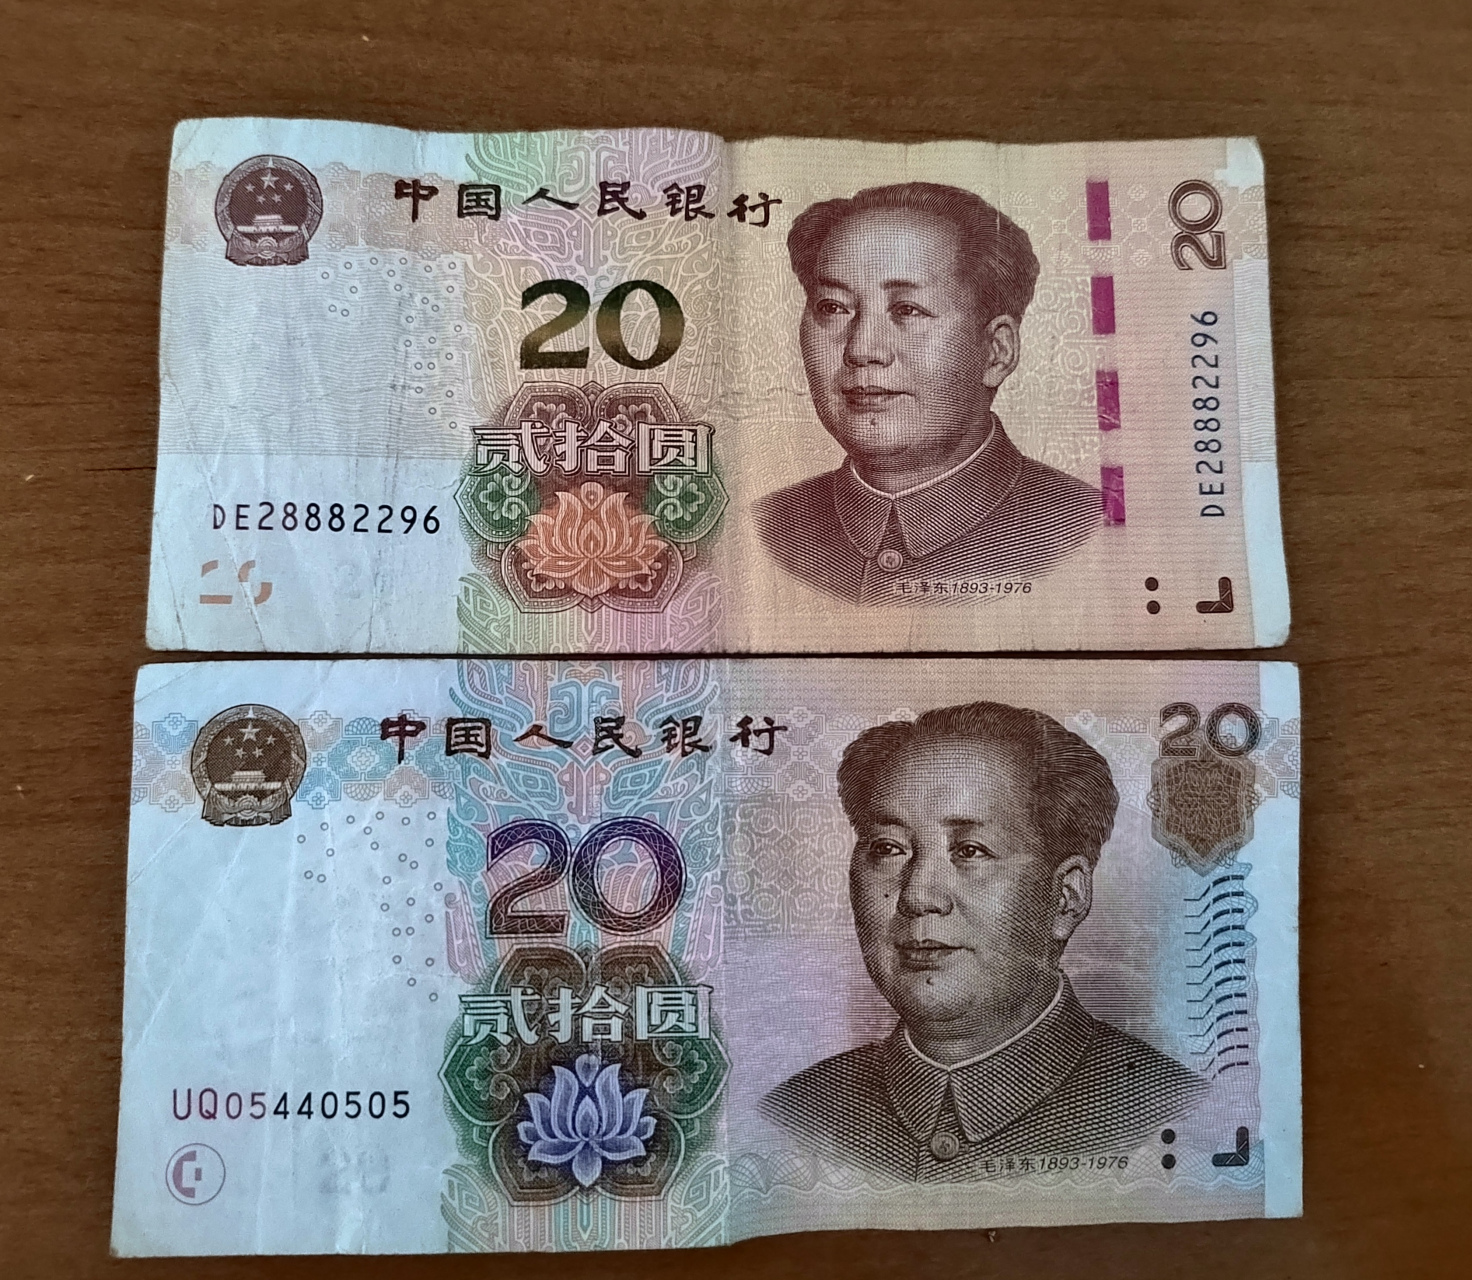 旧版20元人民币图片